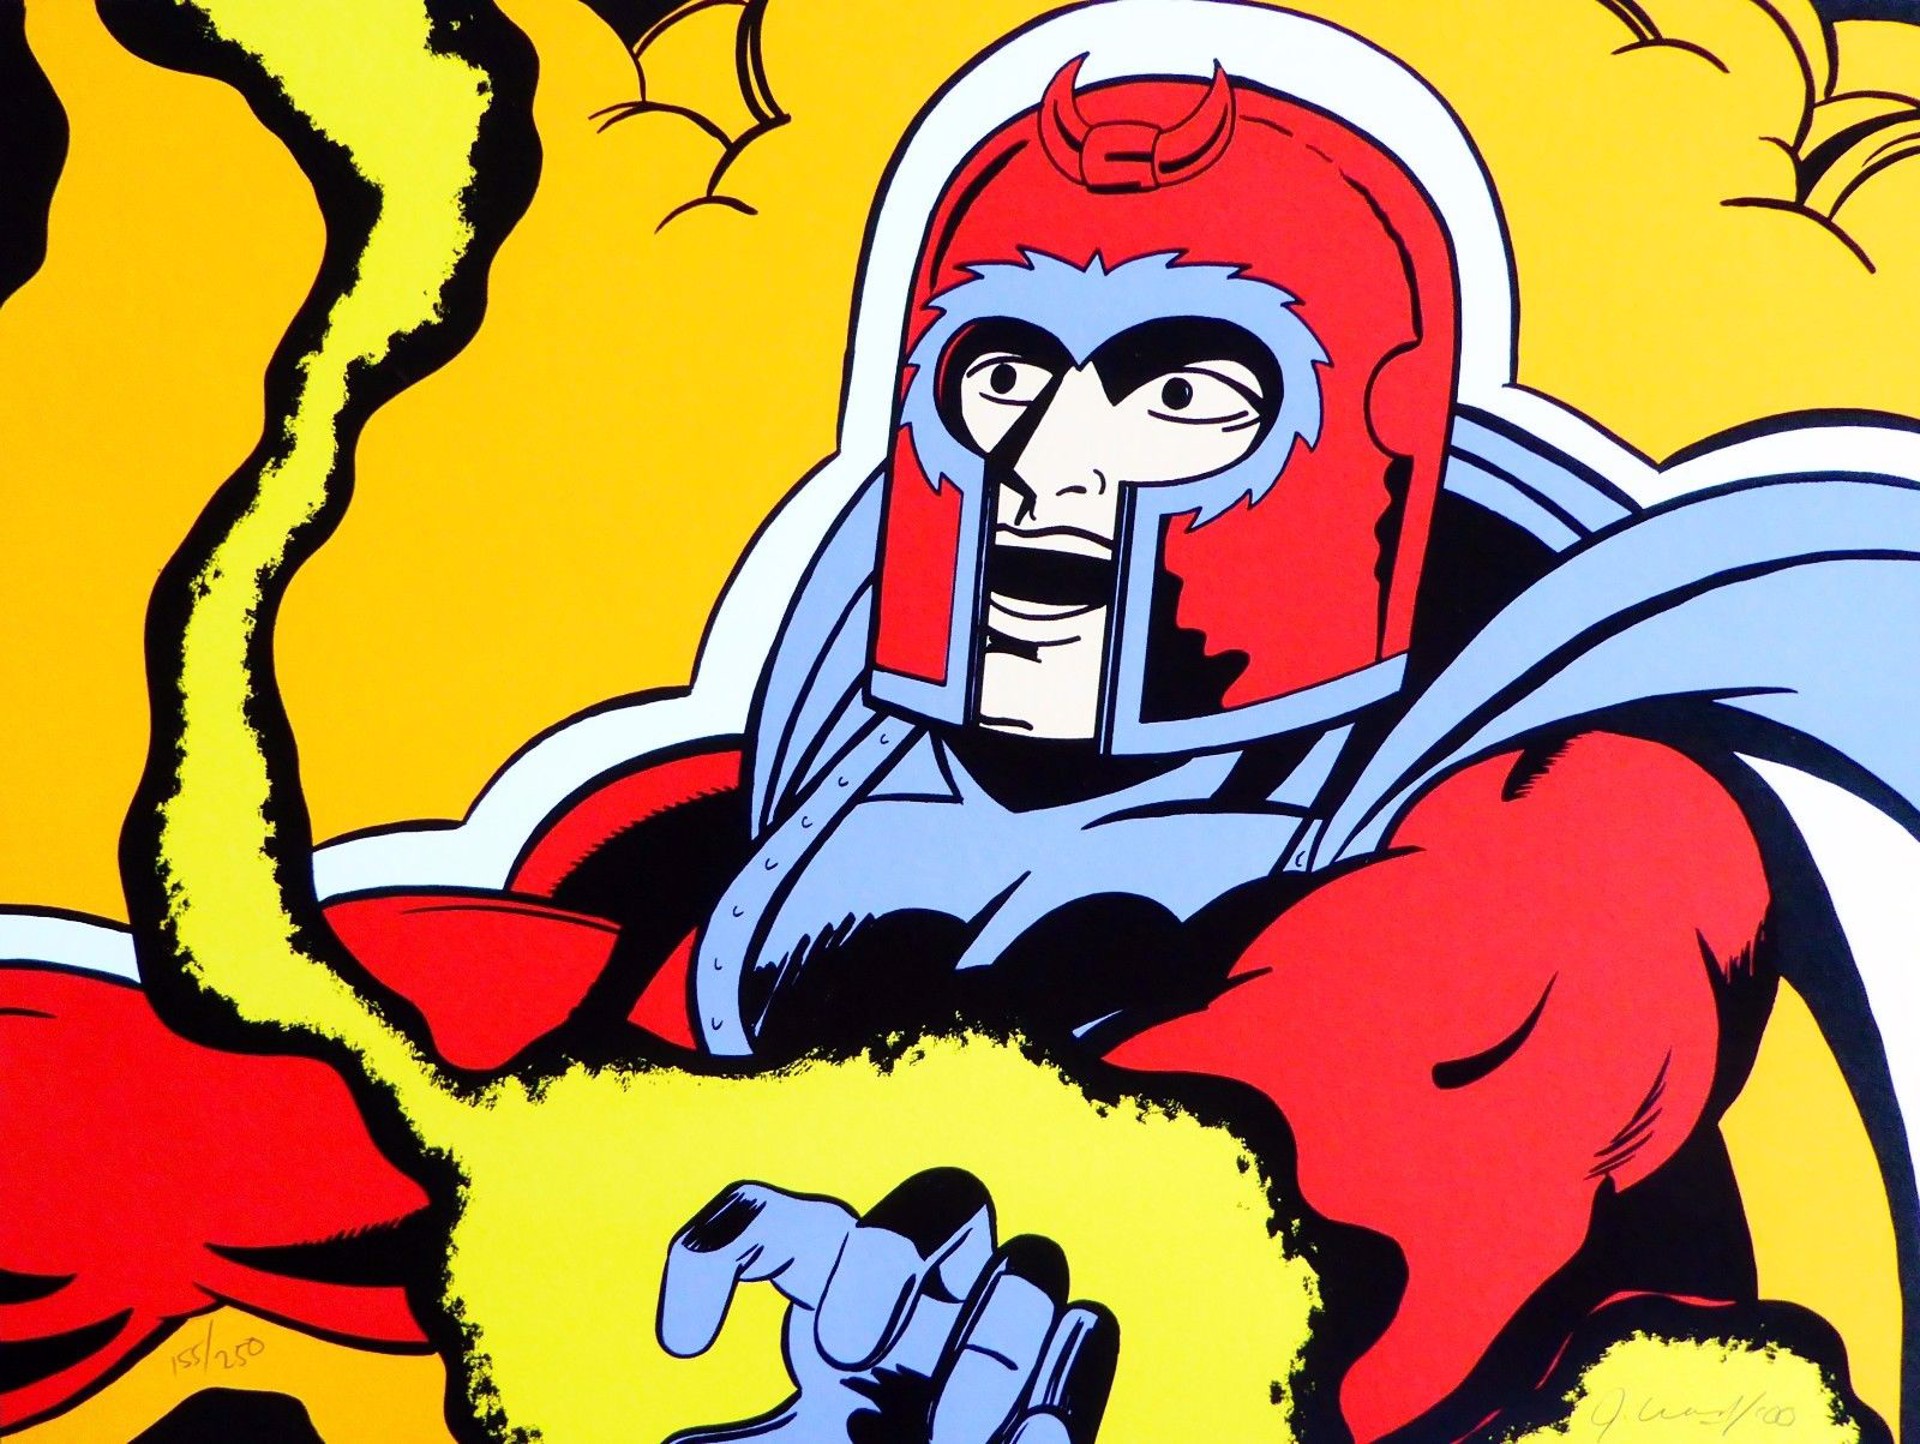 X-Men (Magneto) by John "Crash" Matos